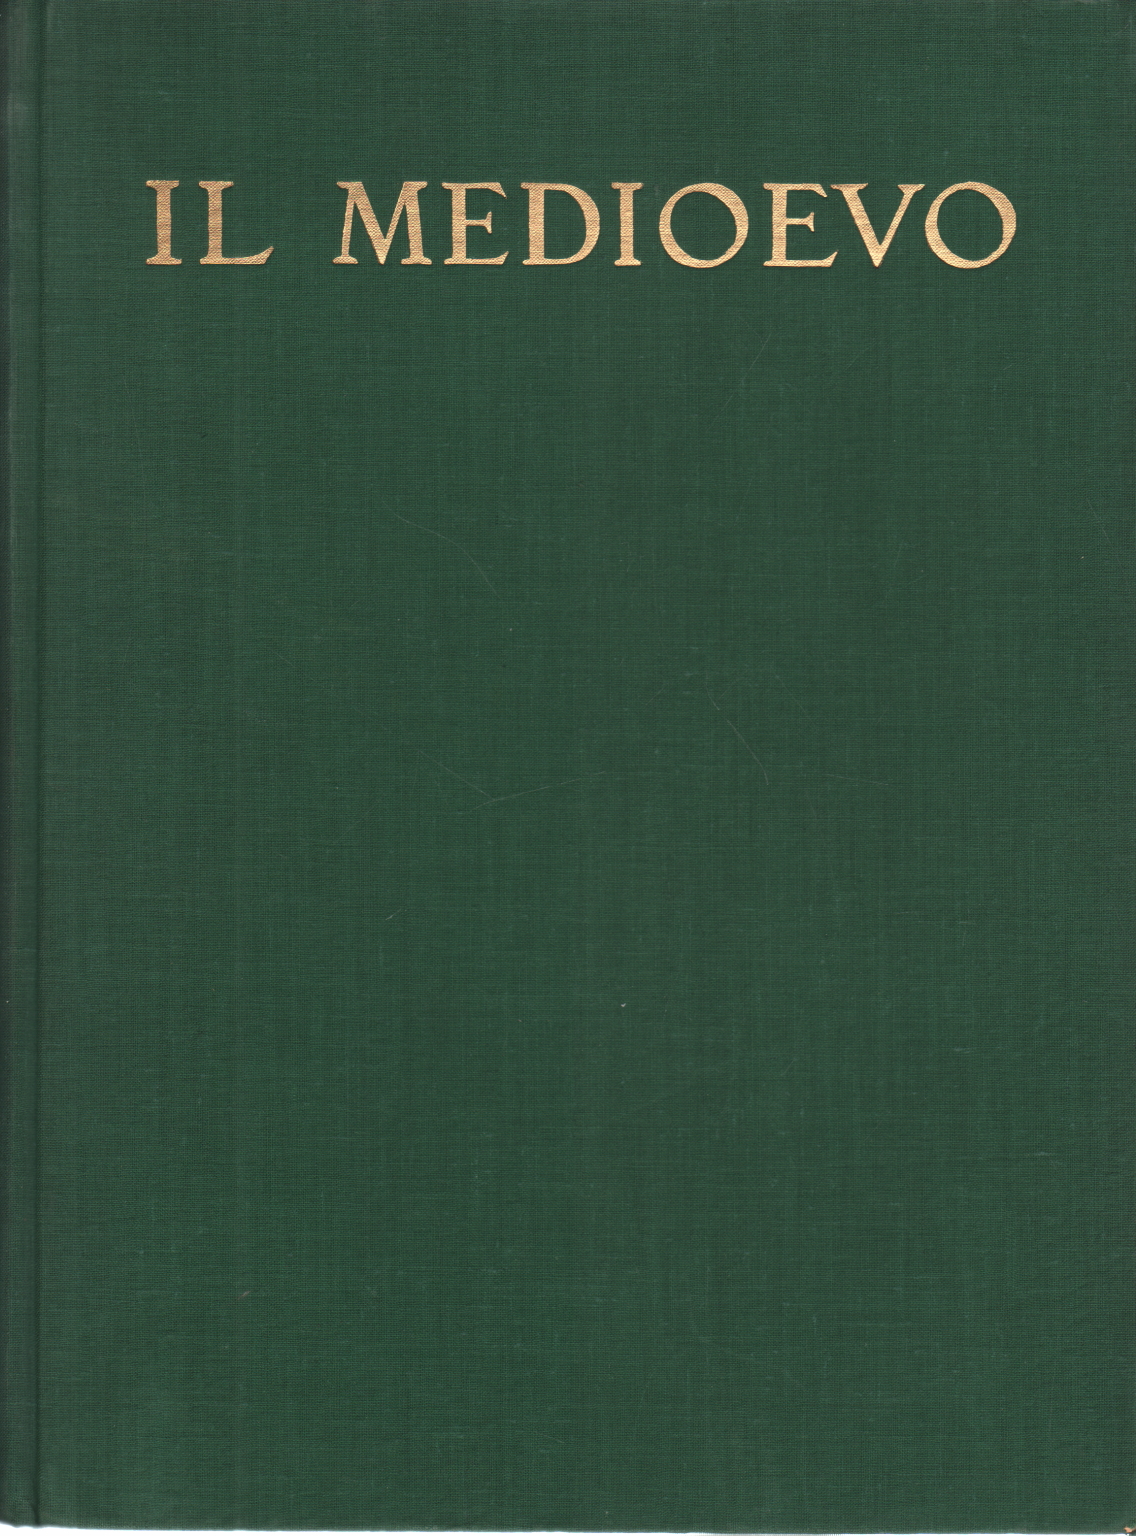 La historia del arte medieval y el italiano Emilio Lavagnino